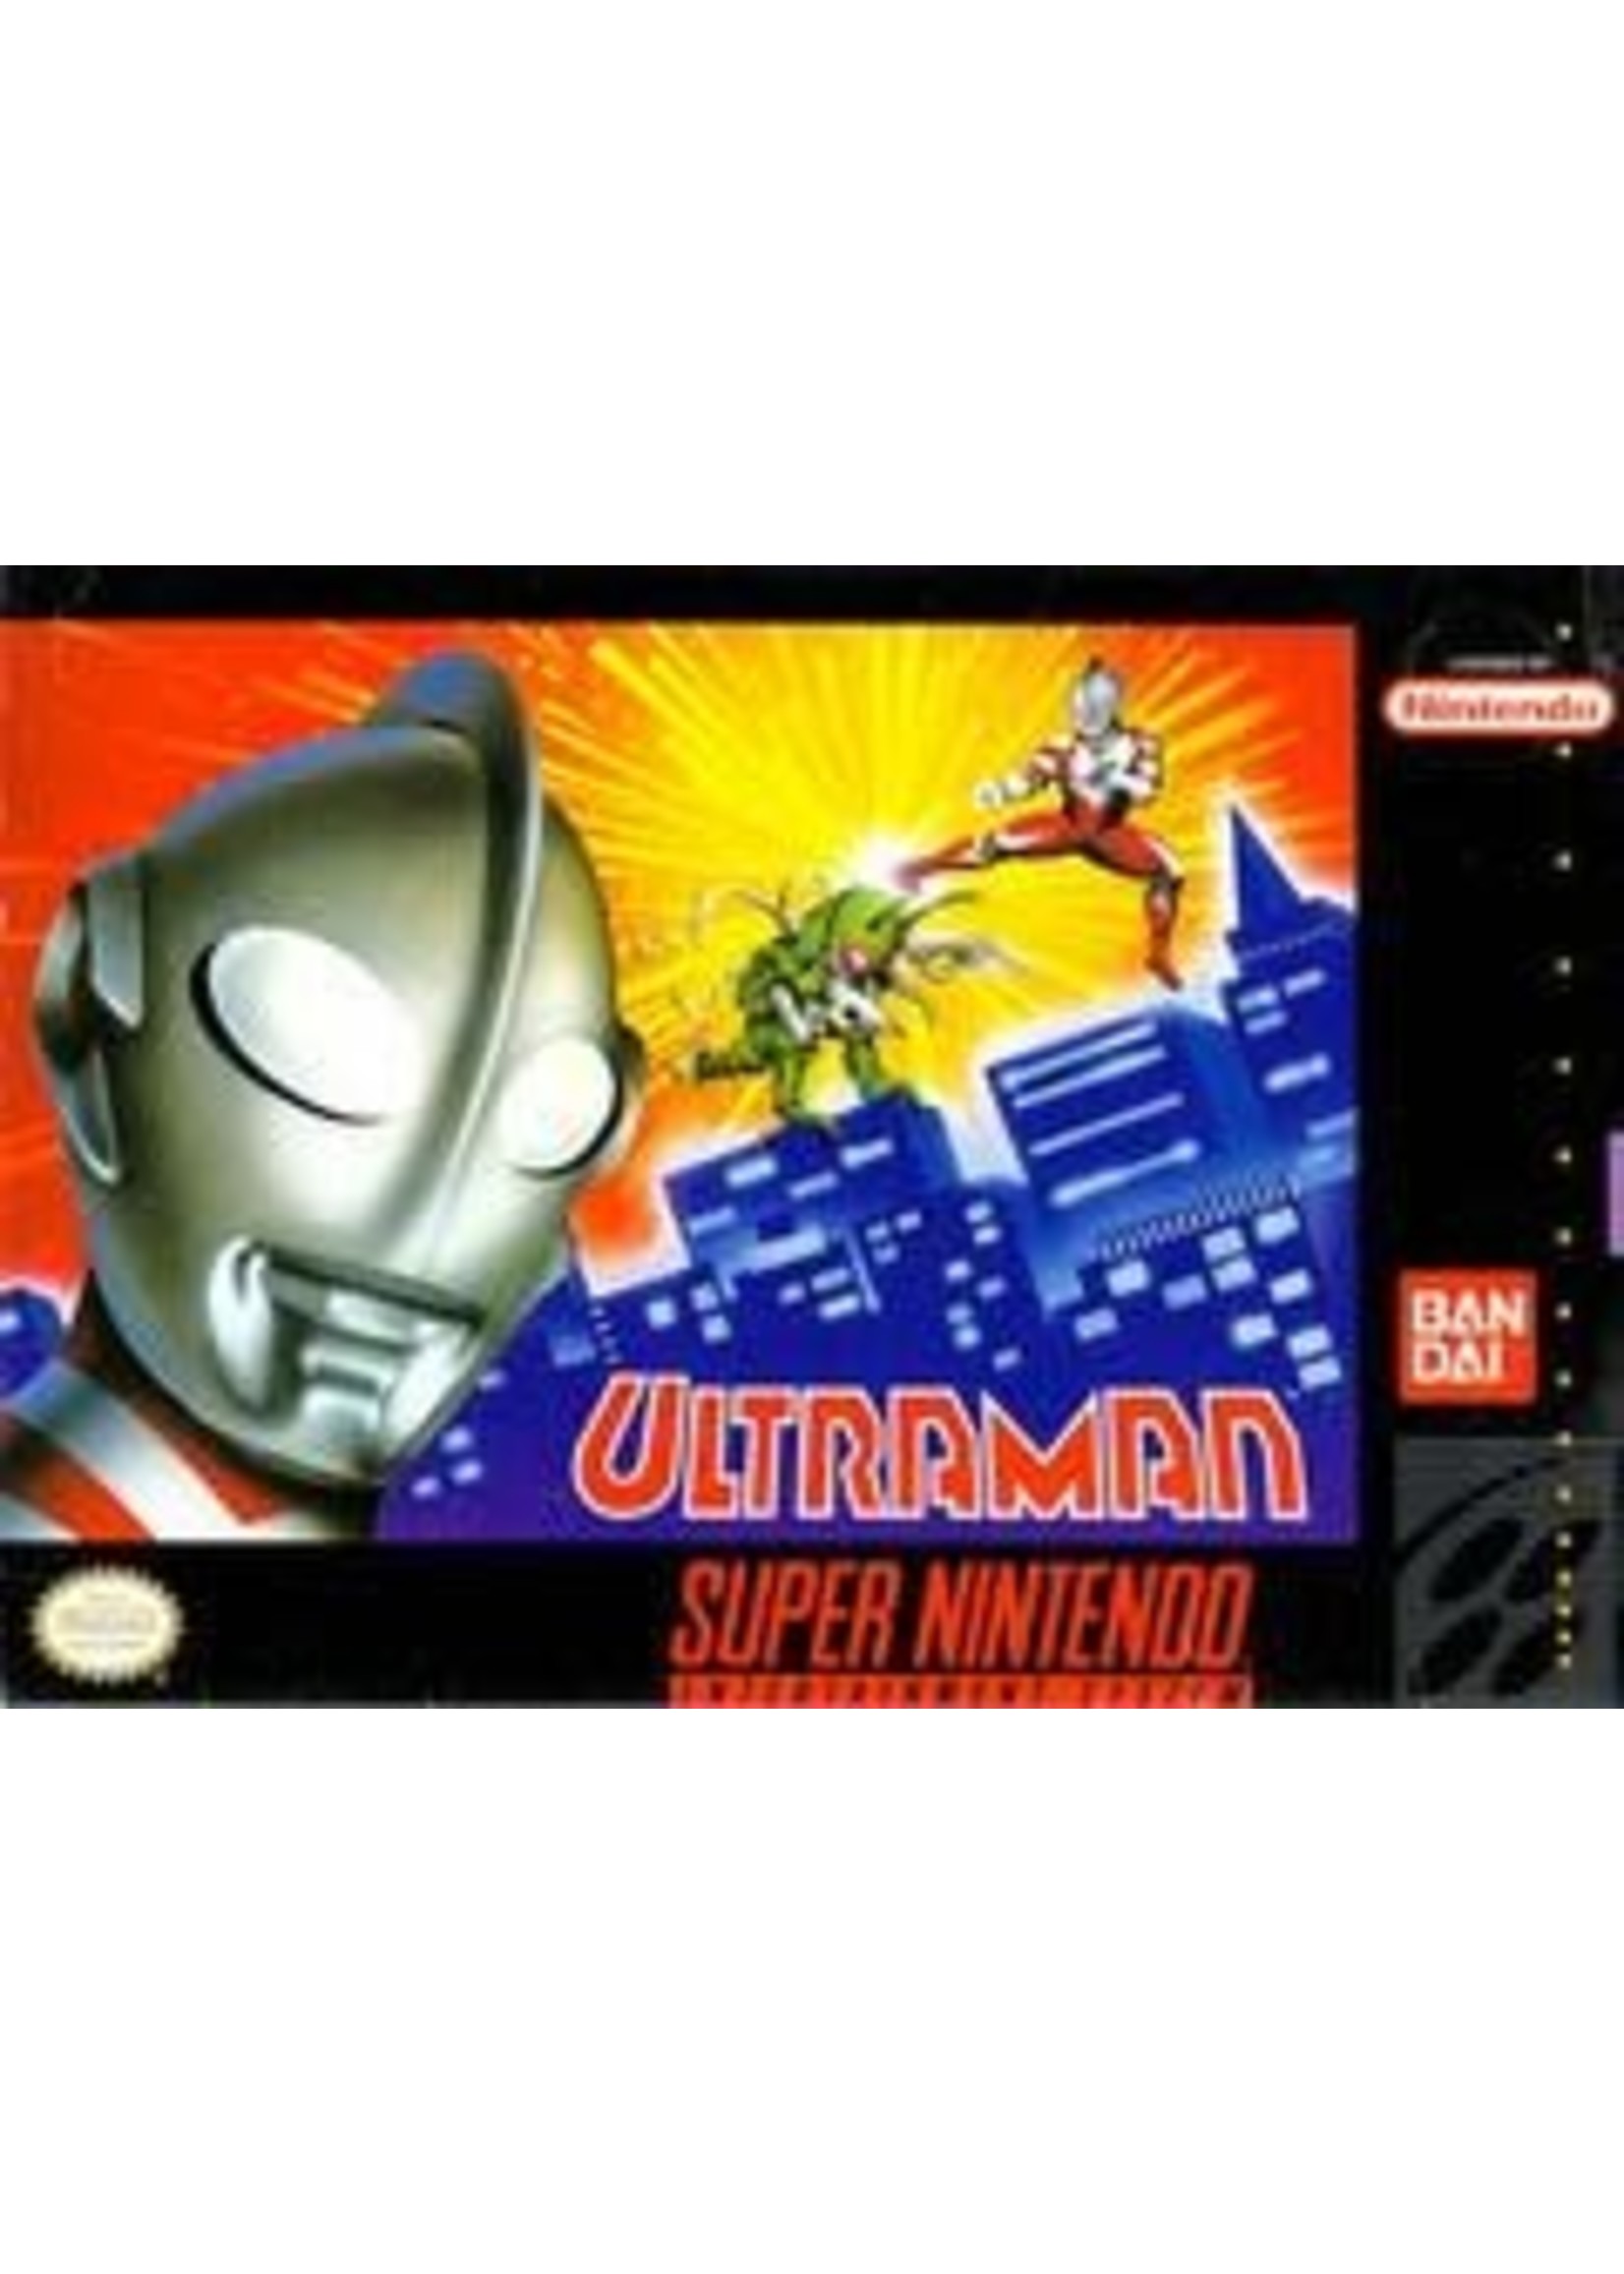 Ultraman Super Nintendo CART ONLY